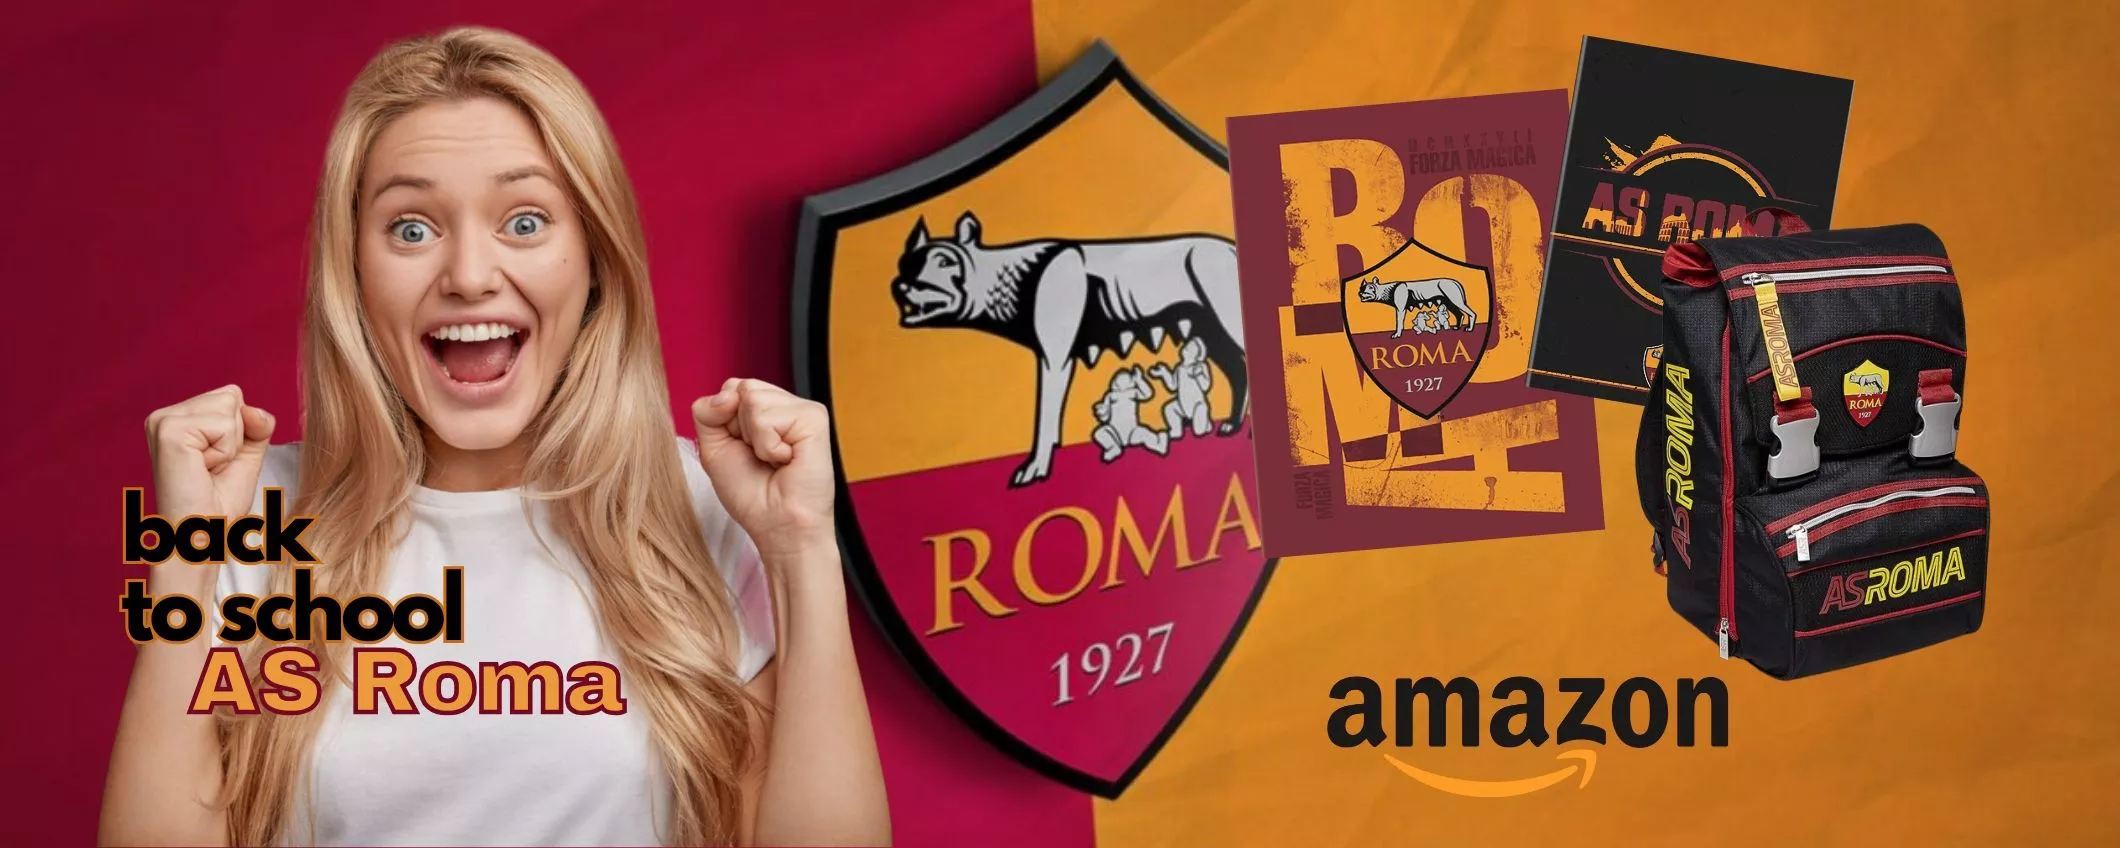 Back to School con la AS Roma: i migliori zaini e accessori griffati MAGICA  su  - Webnews